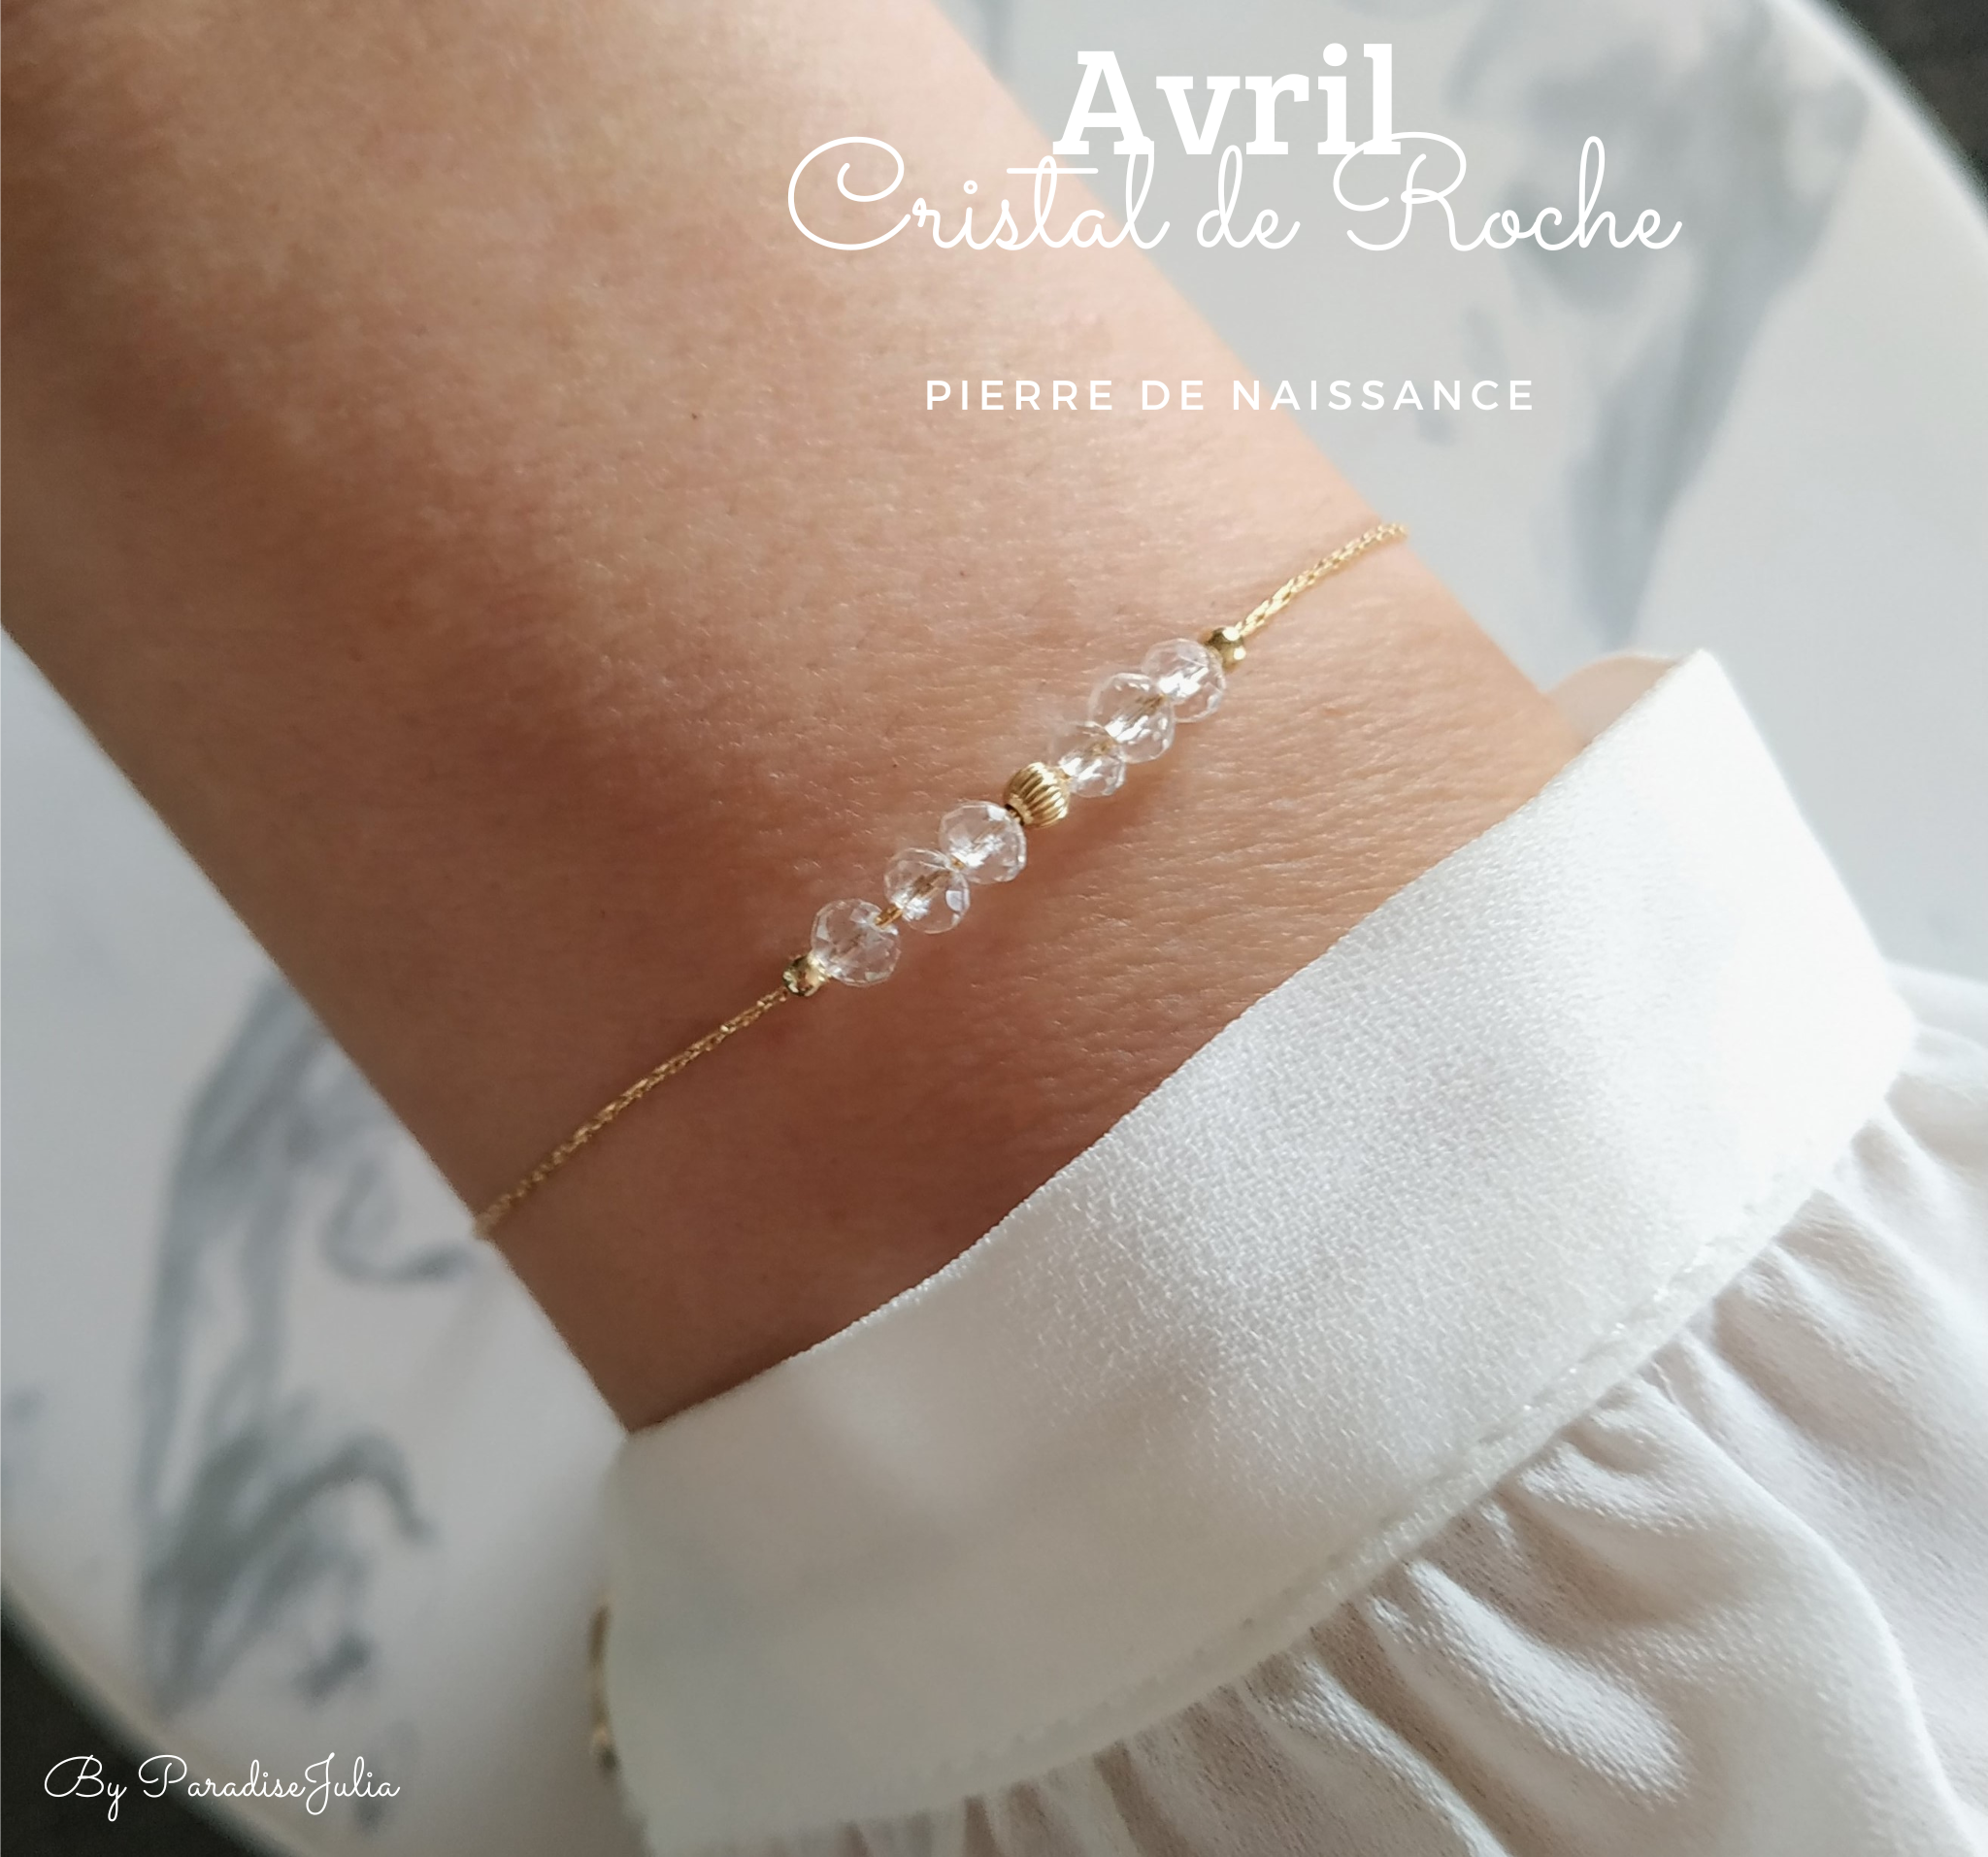 Bracelet Pierre de Naissance -Avril- Cristal de Roche perles